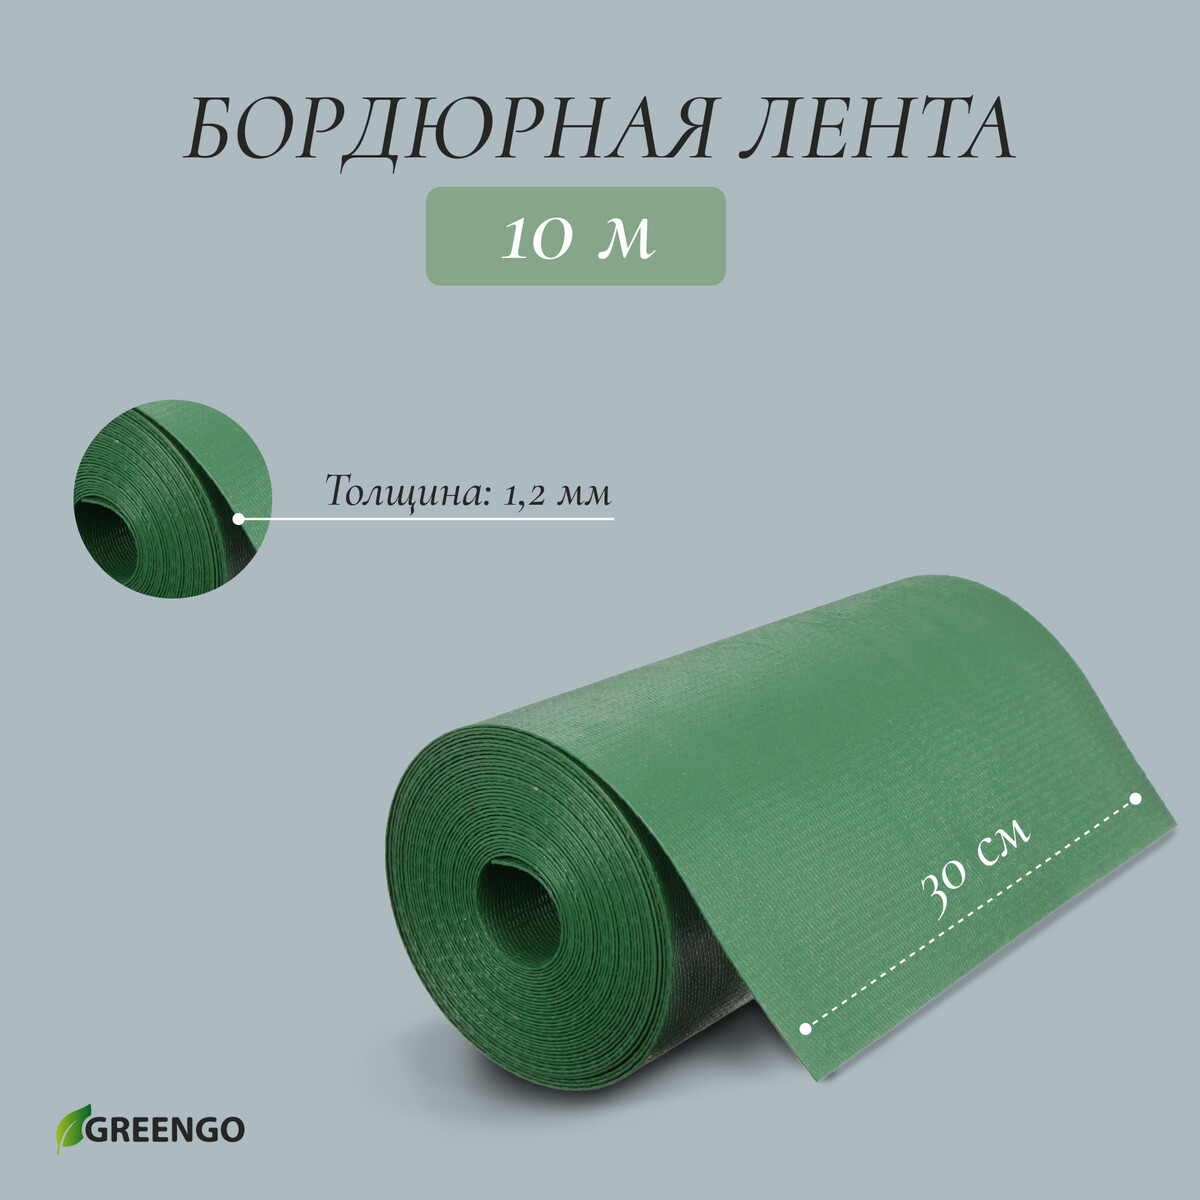 Лента бордюрная, 0.3 × 10 м, толщина 1.2 мм, пластиковая, зеленая, greengo лента бордюрная 0 2 × 9 м толщина 1 2 мм пластиковая фигурная коричневая greengo